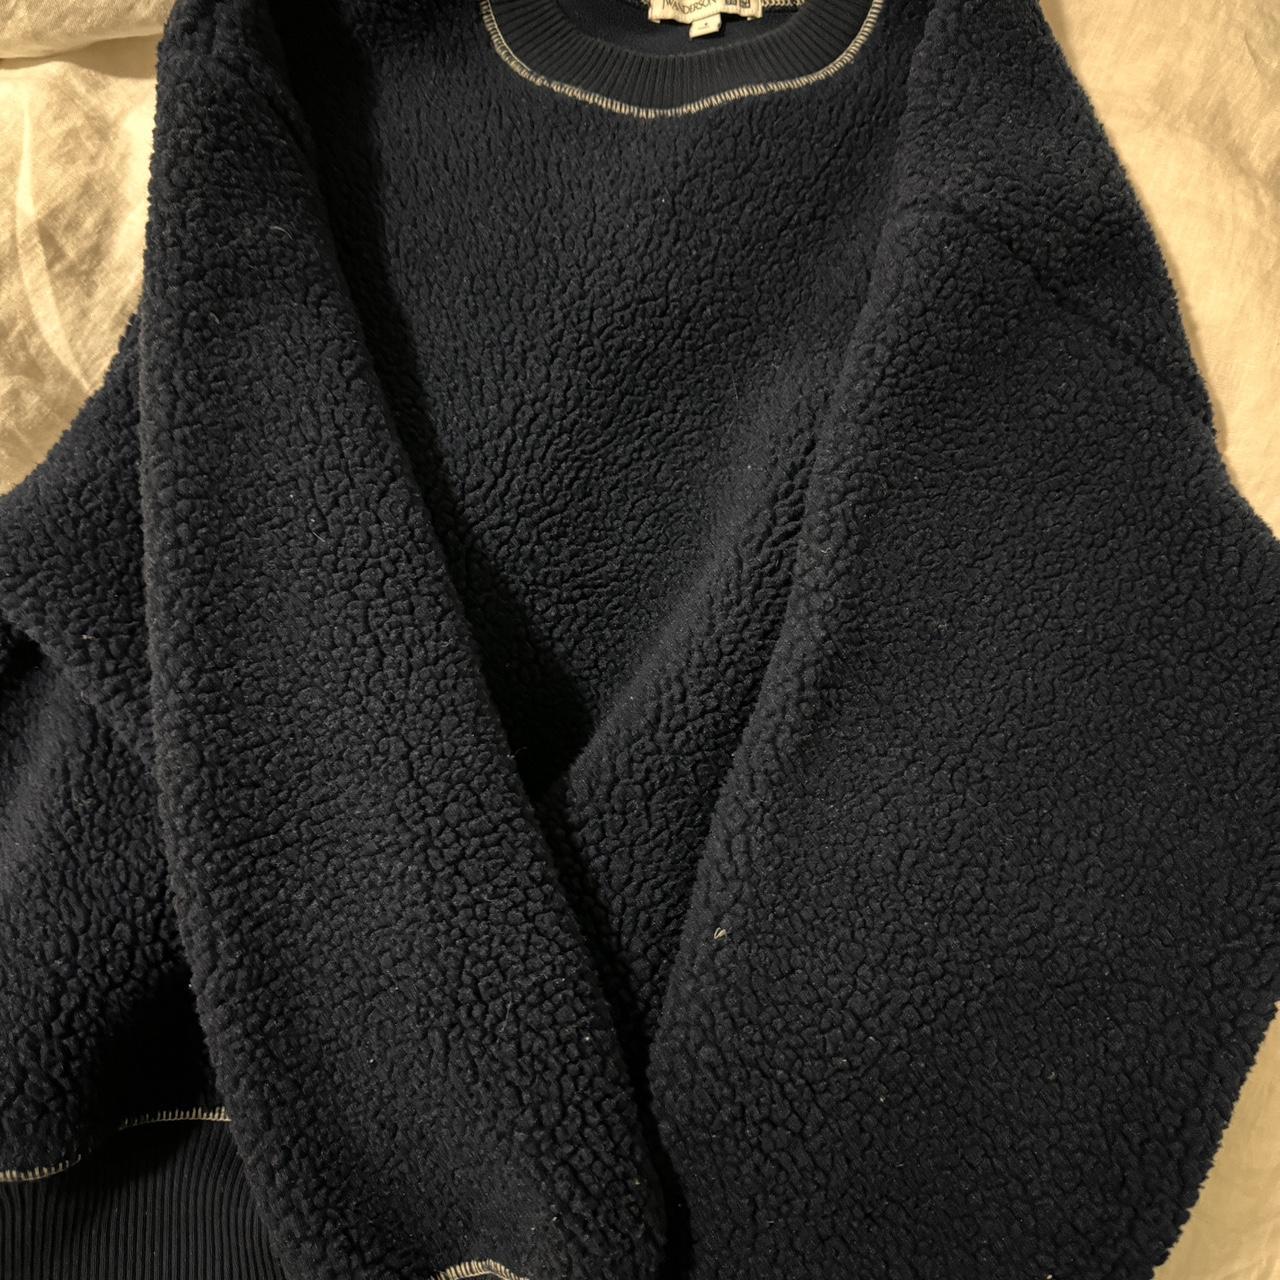 JW anderson fleece sweatshirt worn a few times - Depop